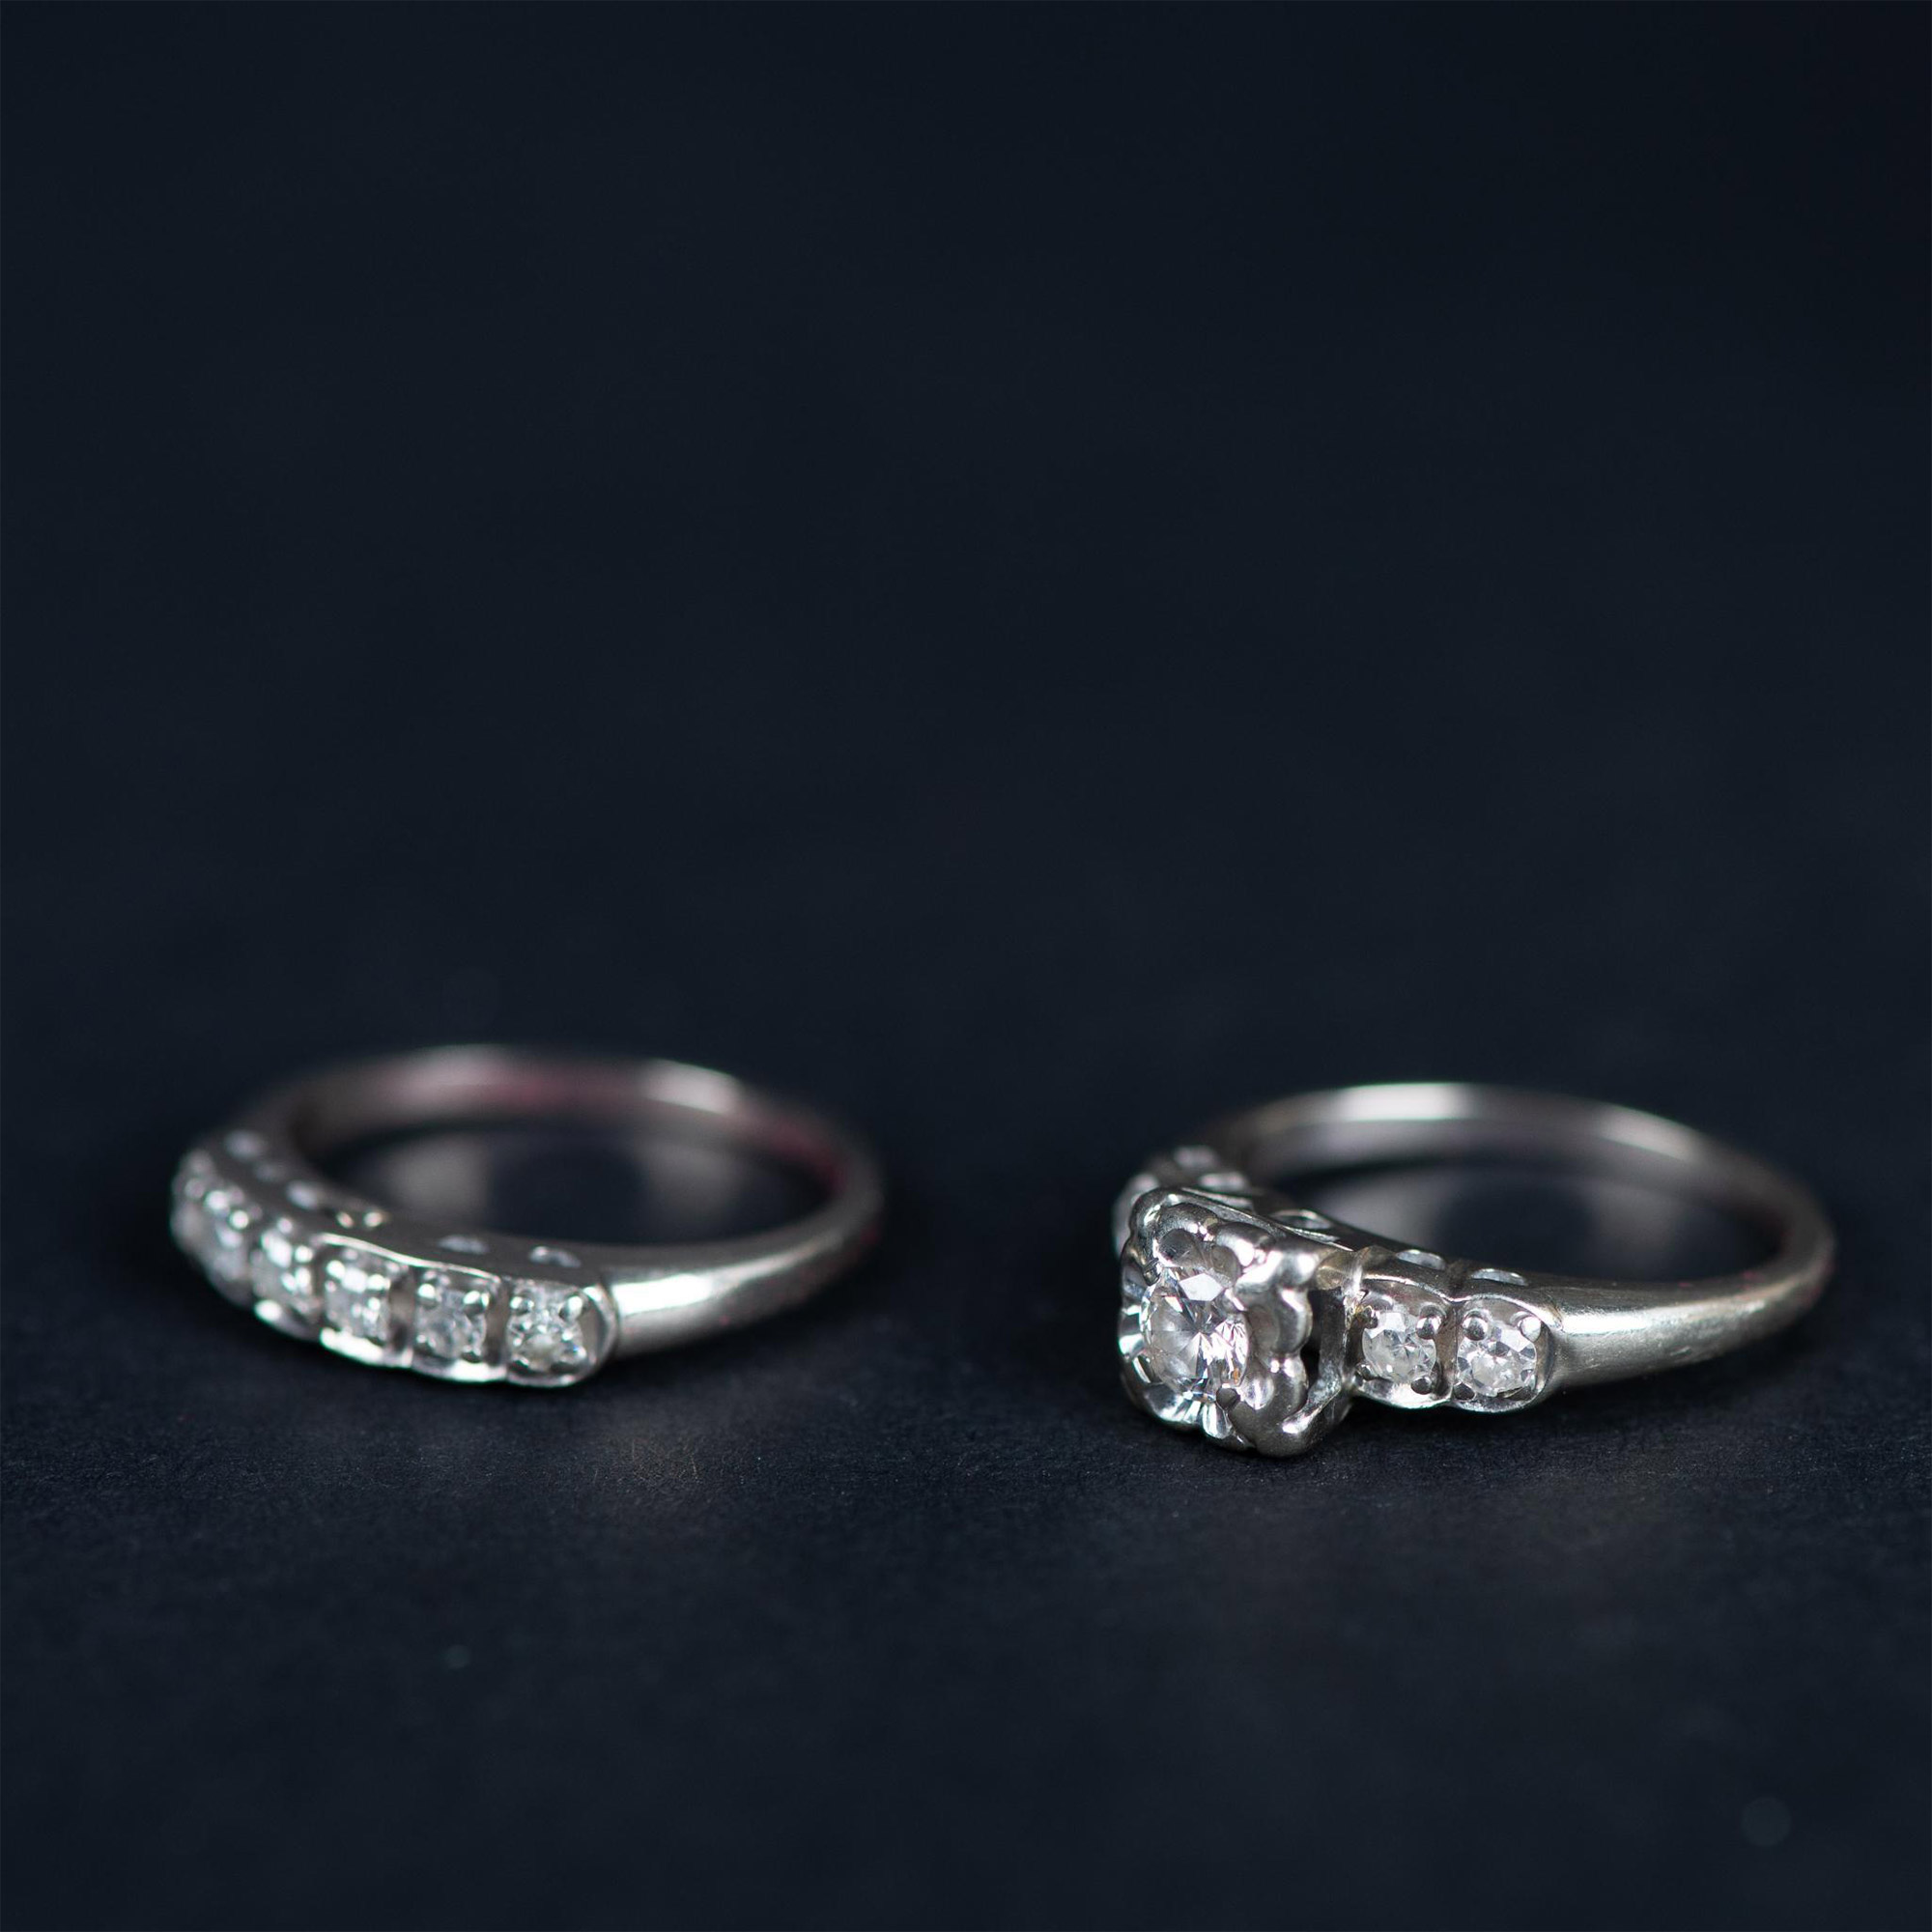 14K White Gold Diamond Engagement Ring & Wedding Band Set - Image 2 of 6